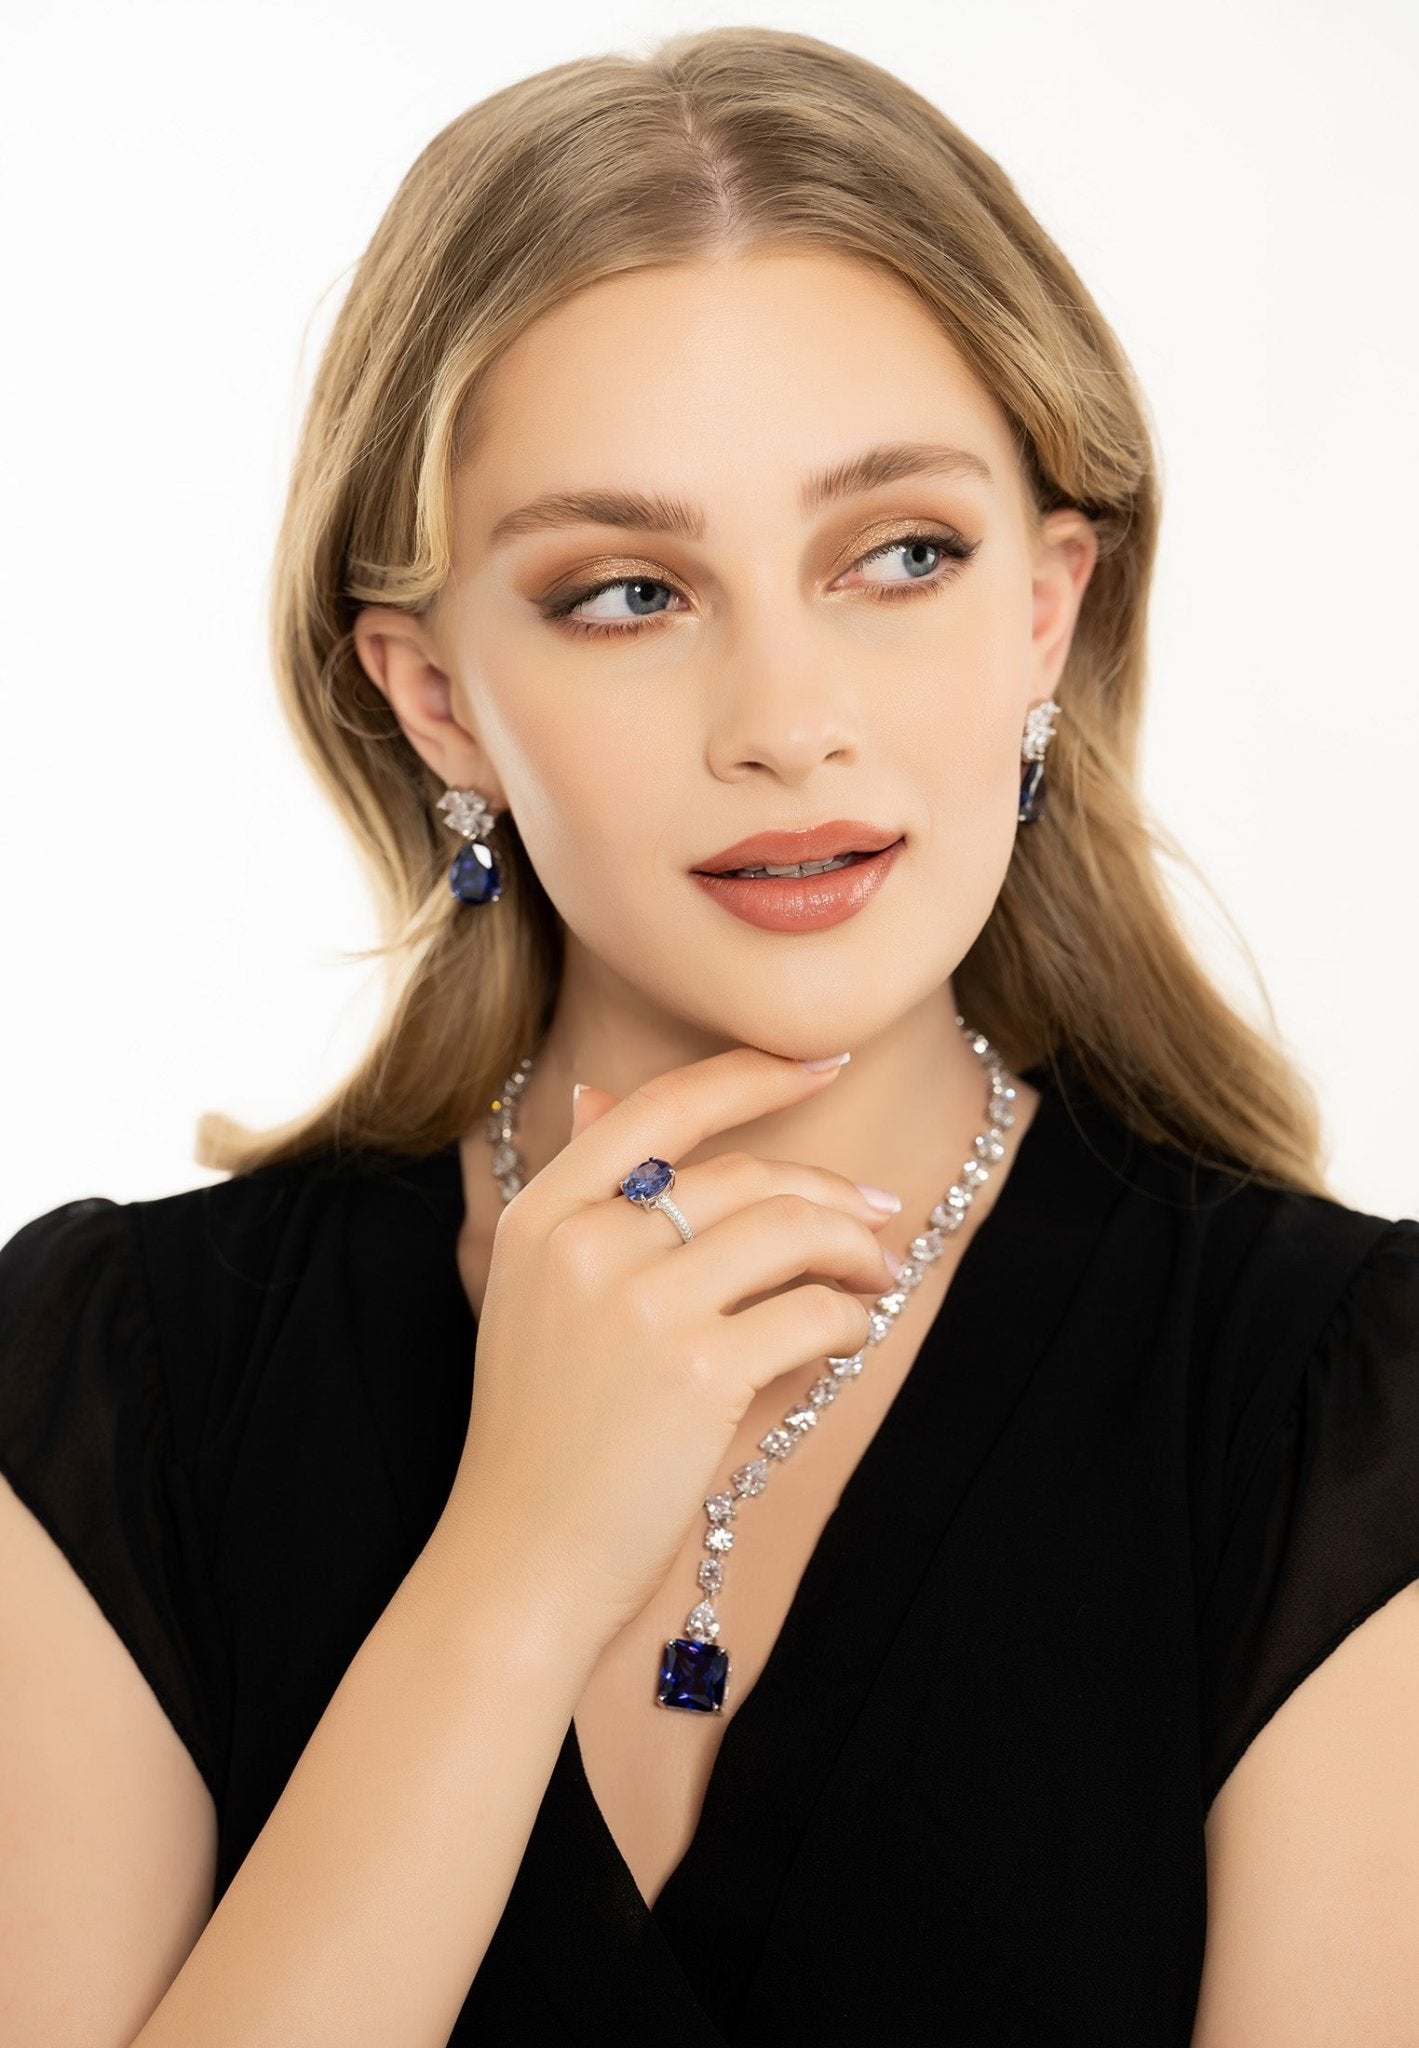 Victoria Teardrop Earrings Silver Tanzanite - LATELITA Earrings